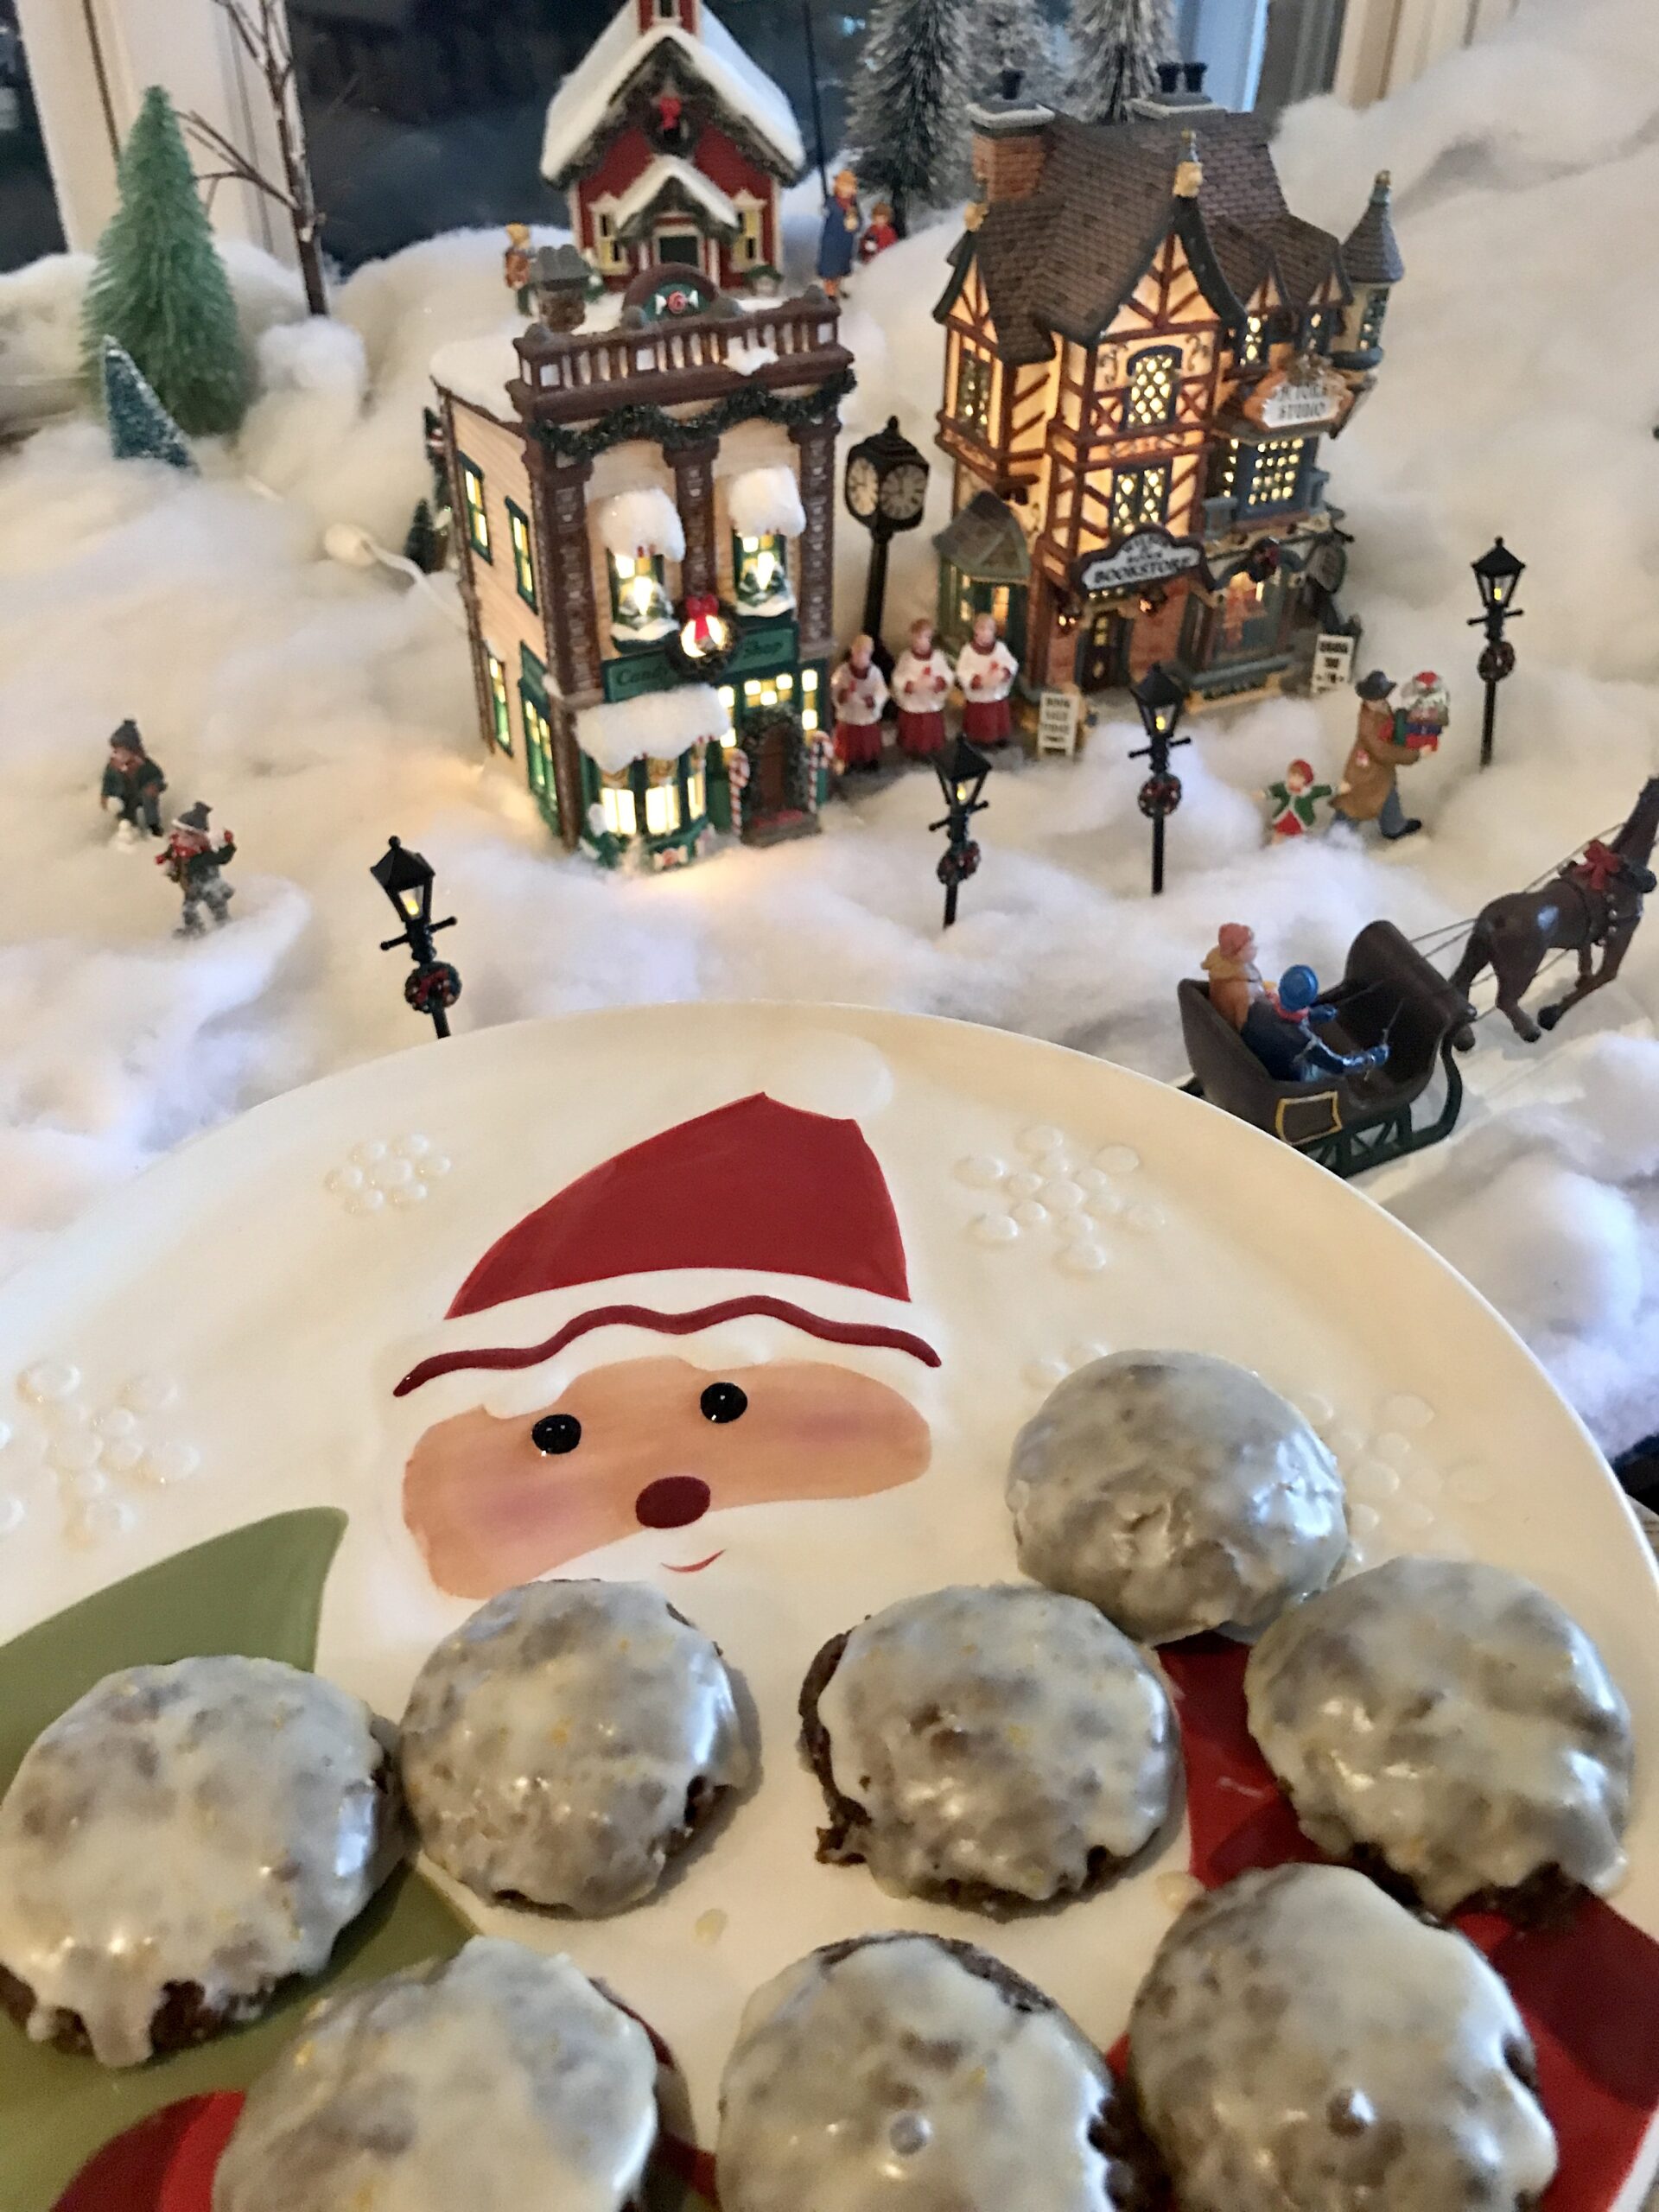 Pfeffernüsse Christmas Cookies